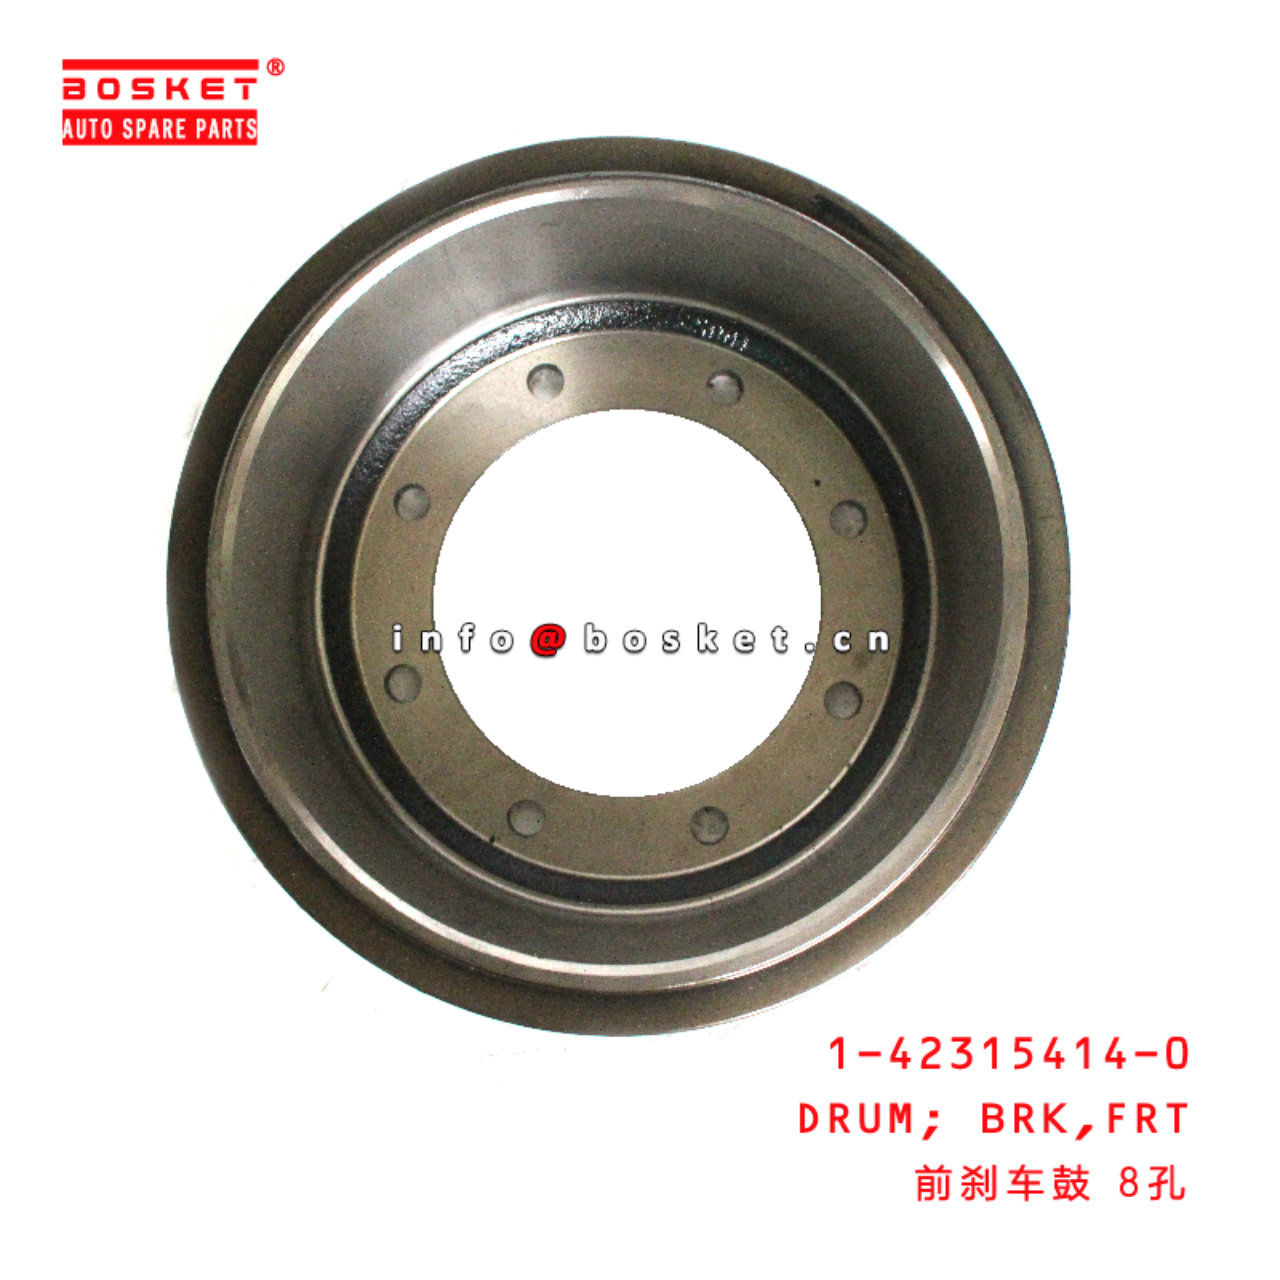 1-42315414-0 Front Brake Drum suitable for ISUZU FRR/FSR 1423154140